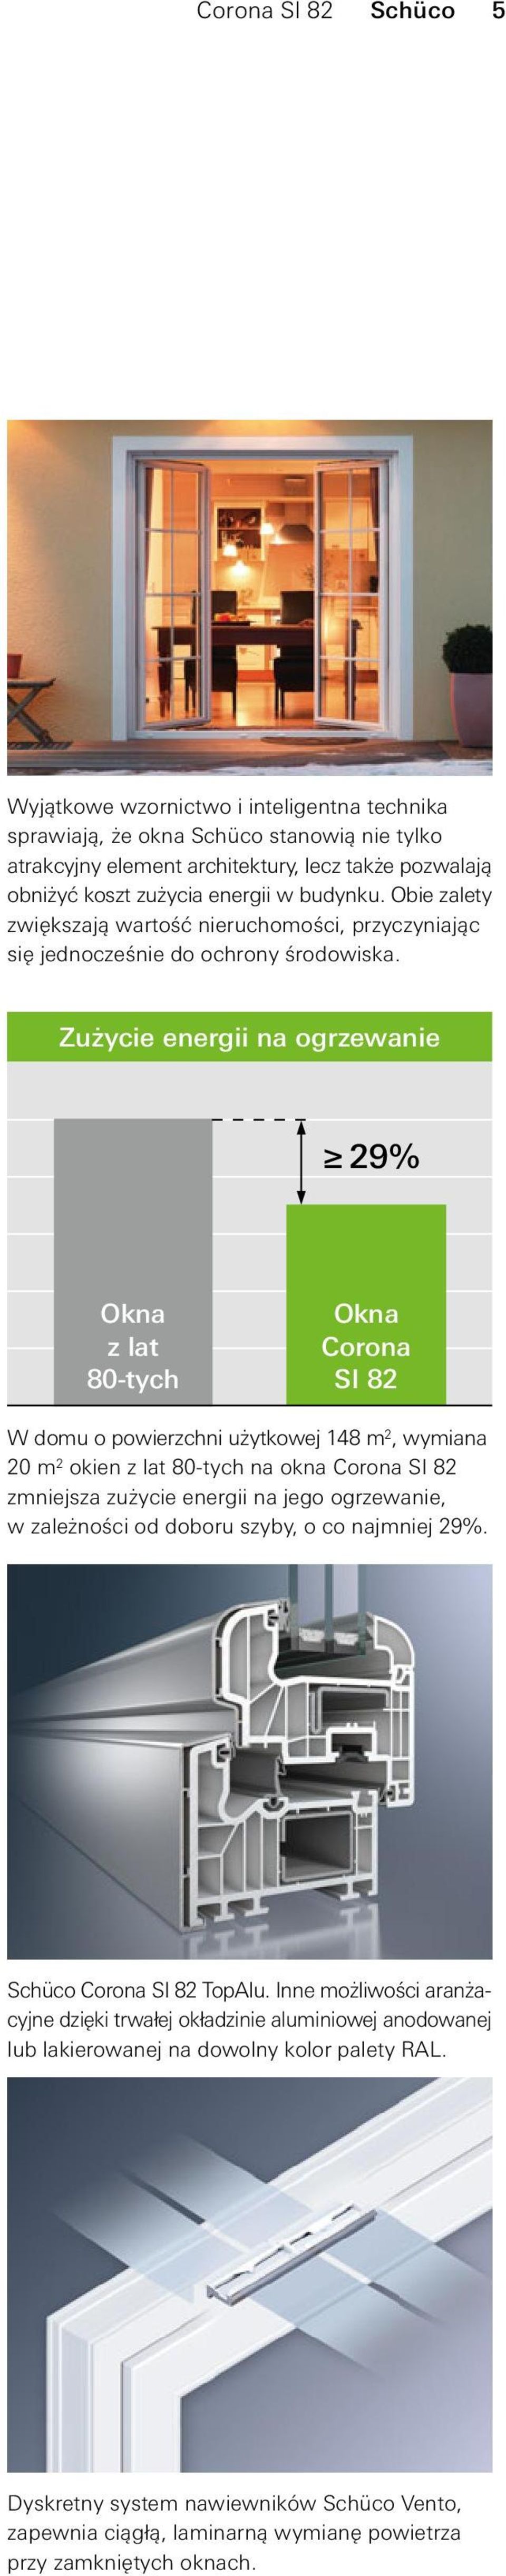 Zużycie energii na ogrzewanie 29% Okna z lat 80-tych Okna Corona SI 82 W domu o powierzchni użytkowej 148 m 2, wymiana 20 m 2 okien z lat 80-tych na okna Corona SI 82 zmniejsza zużycie energii na